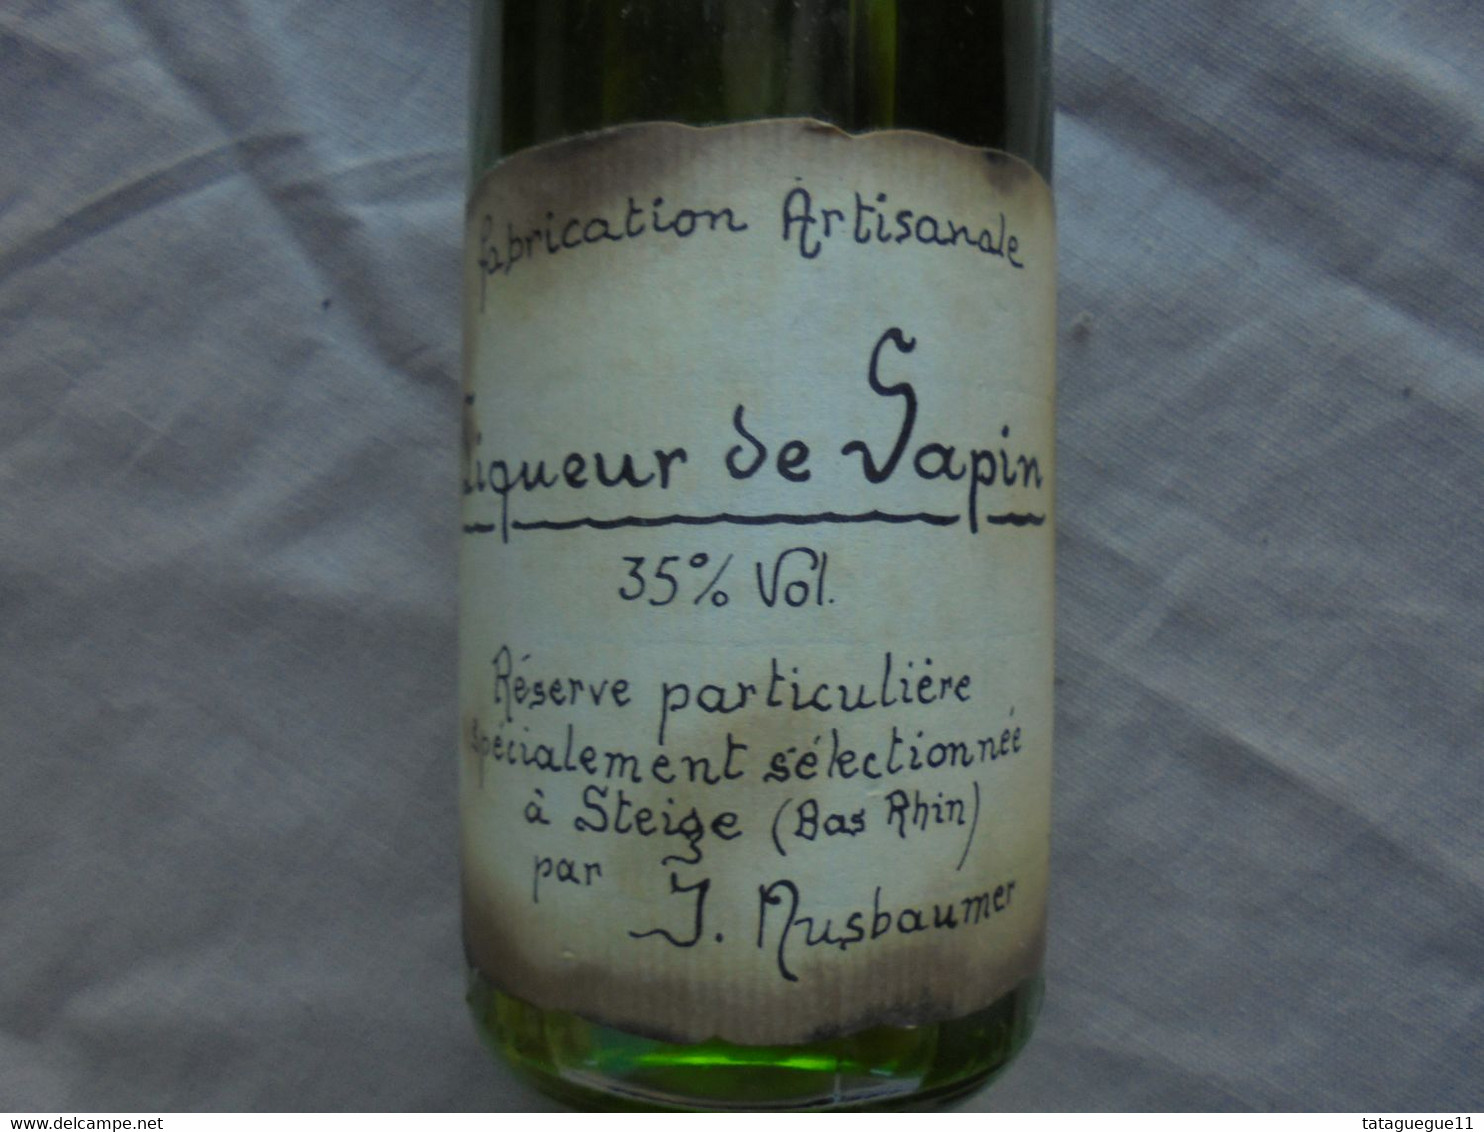 Ancien - Bouteille Pleine Liqueur De Sapin Distillerie Jos Nusbaumer Steige - Spirits